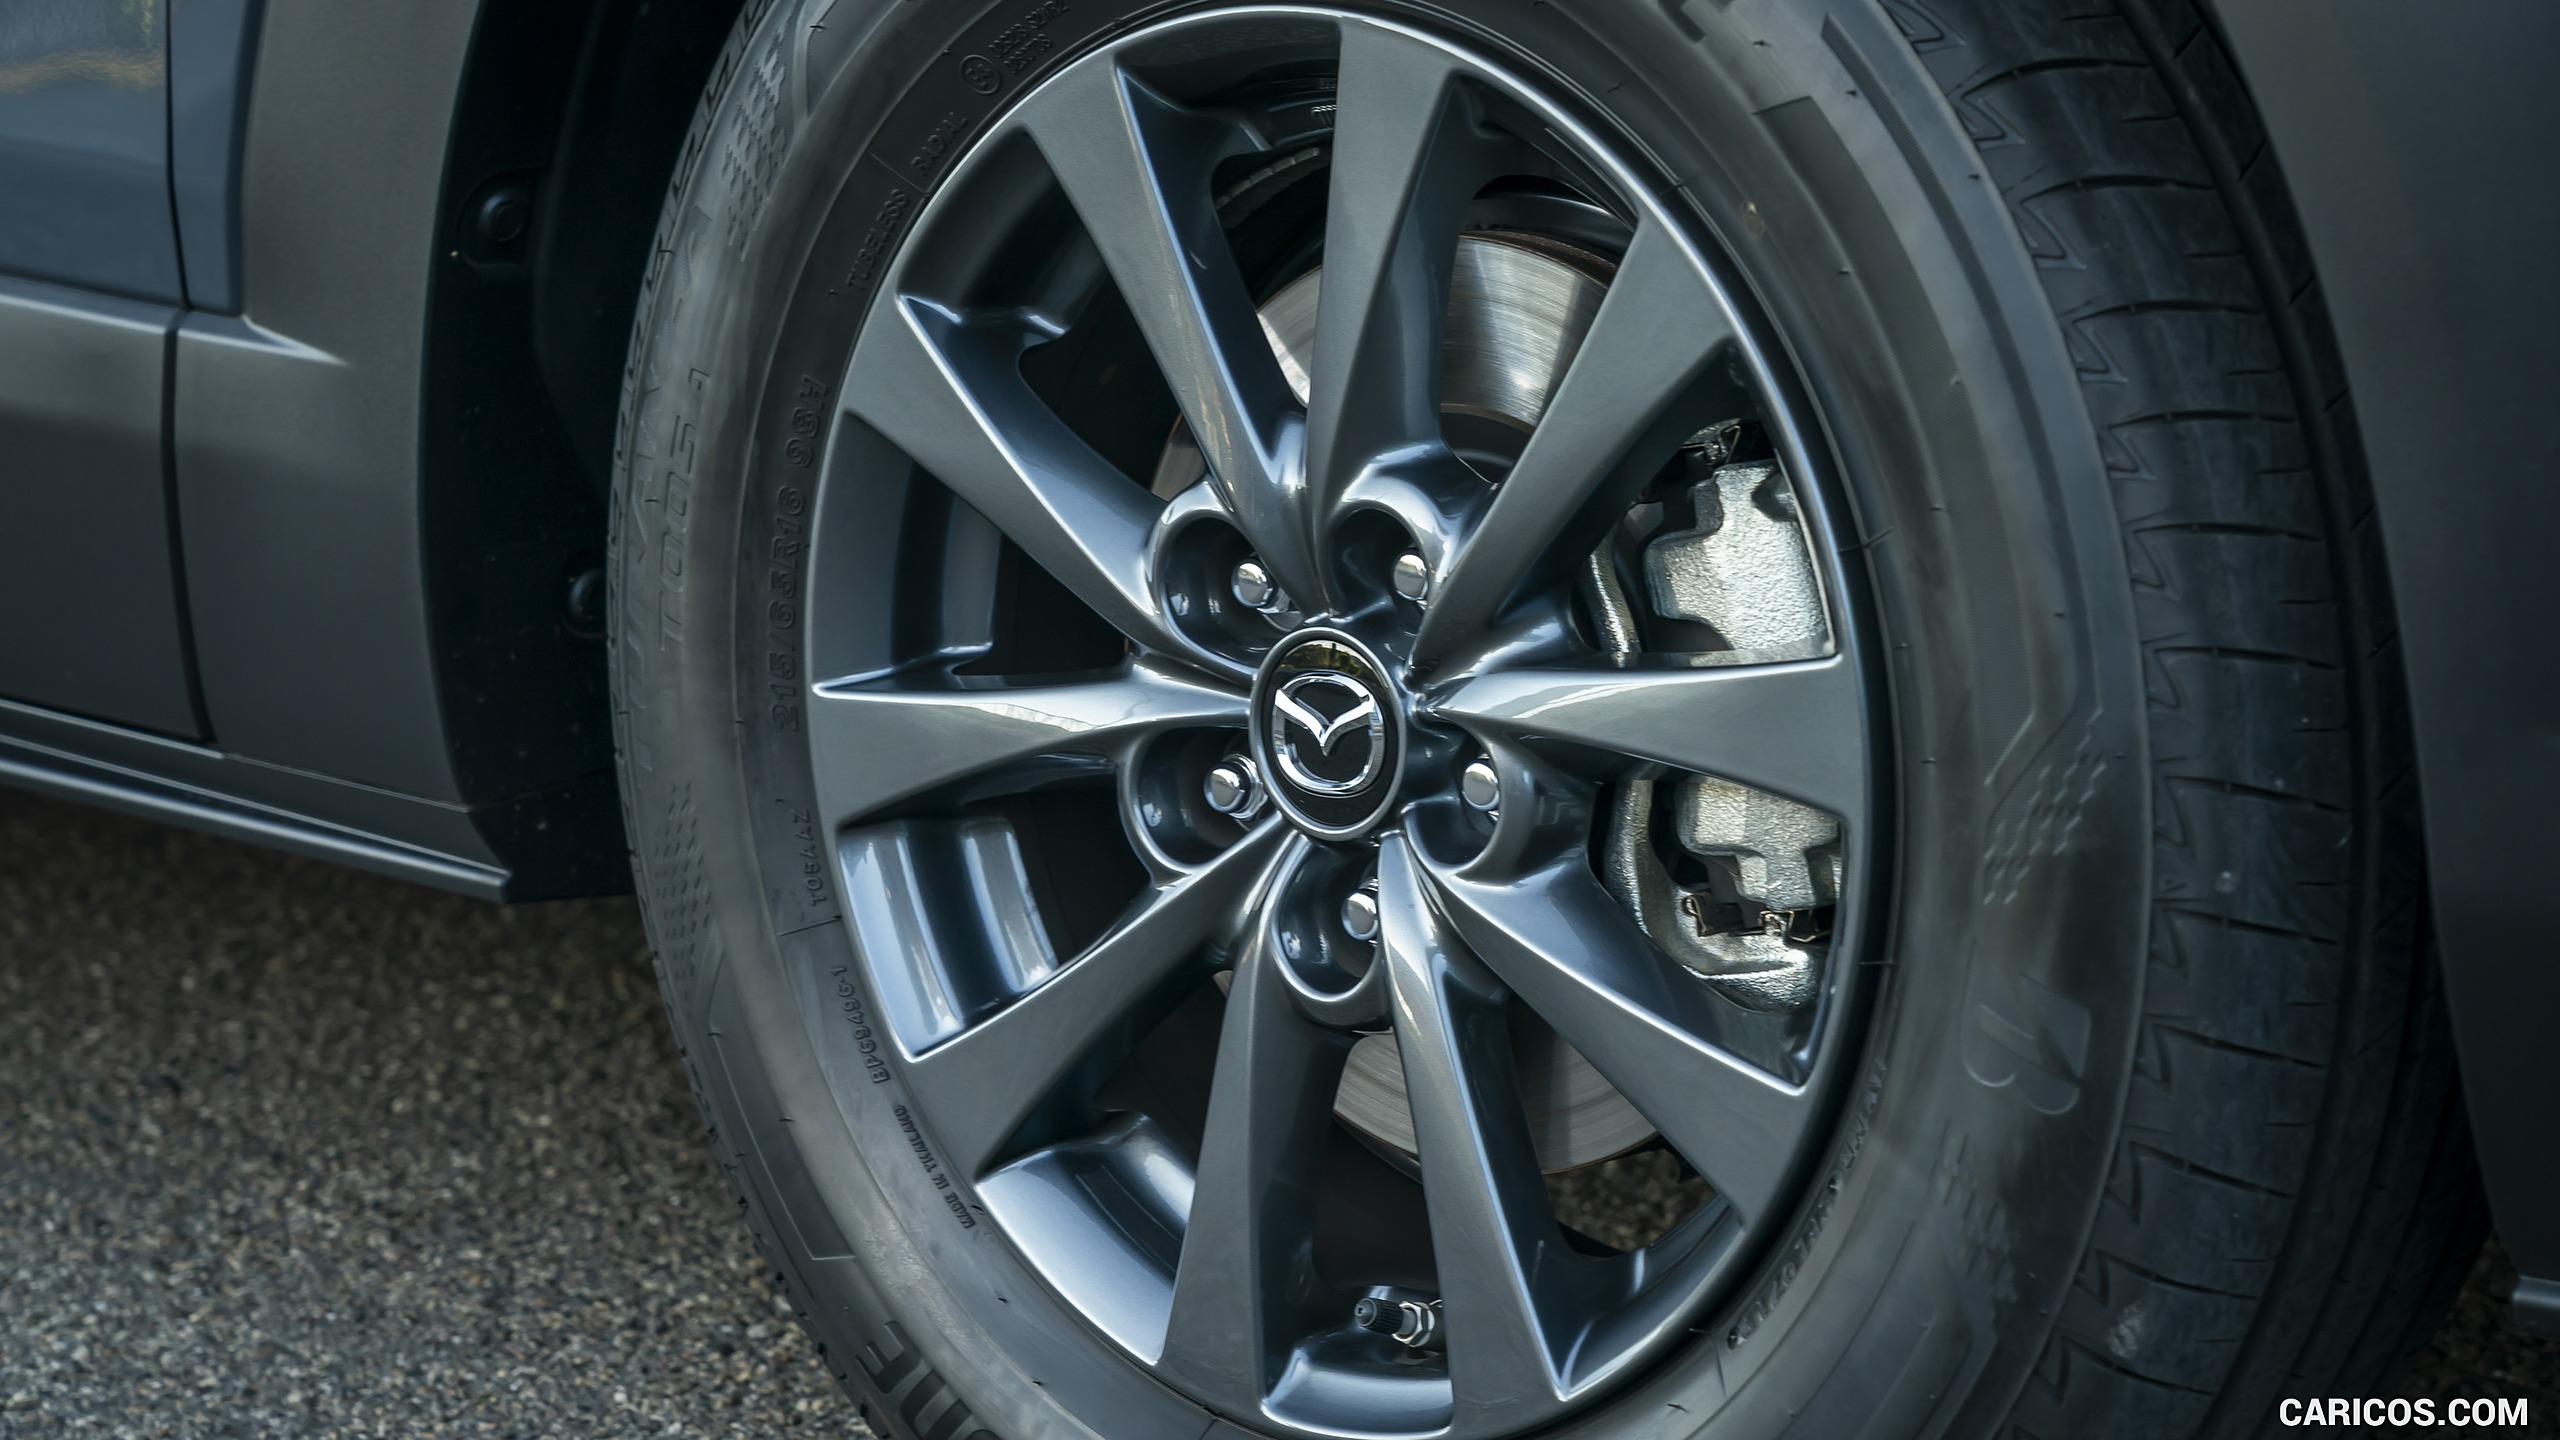 2020 Mazda CX-30 (Color: Polymetal Grey) - Wheel, #150 of 226